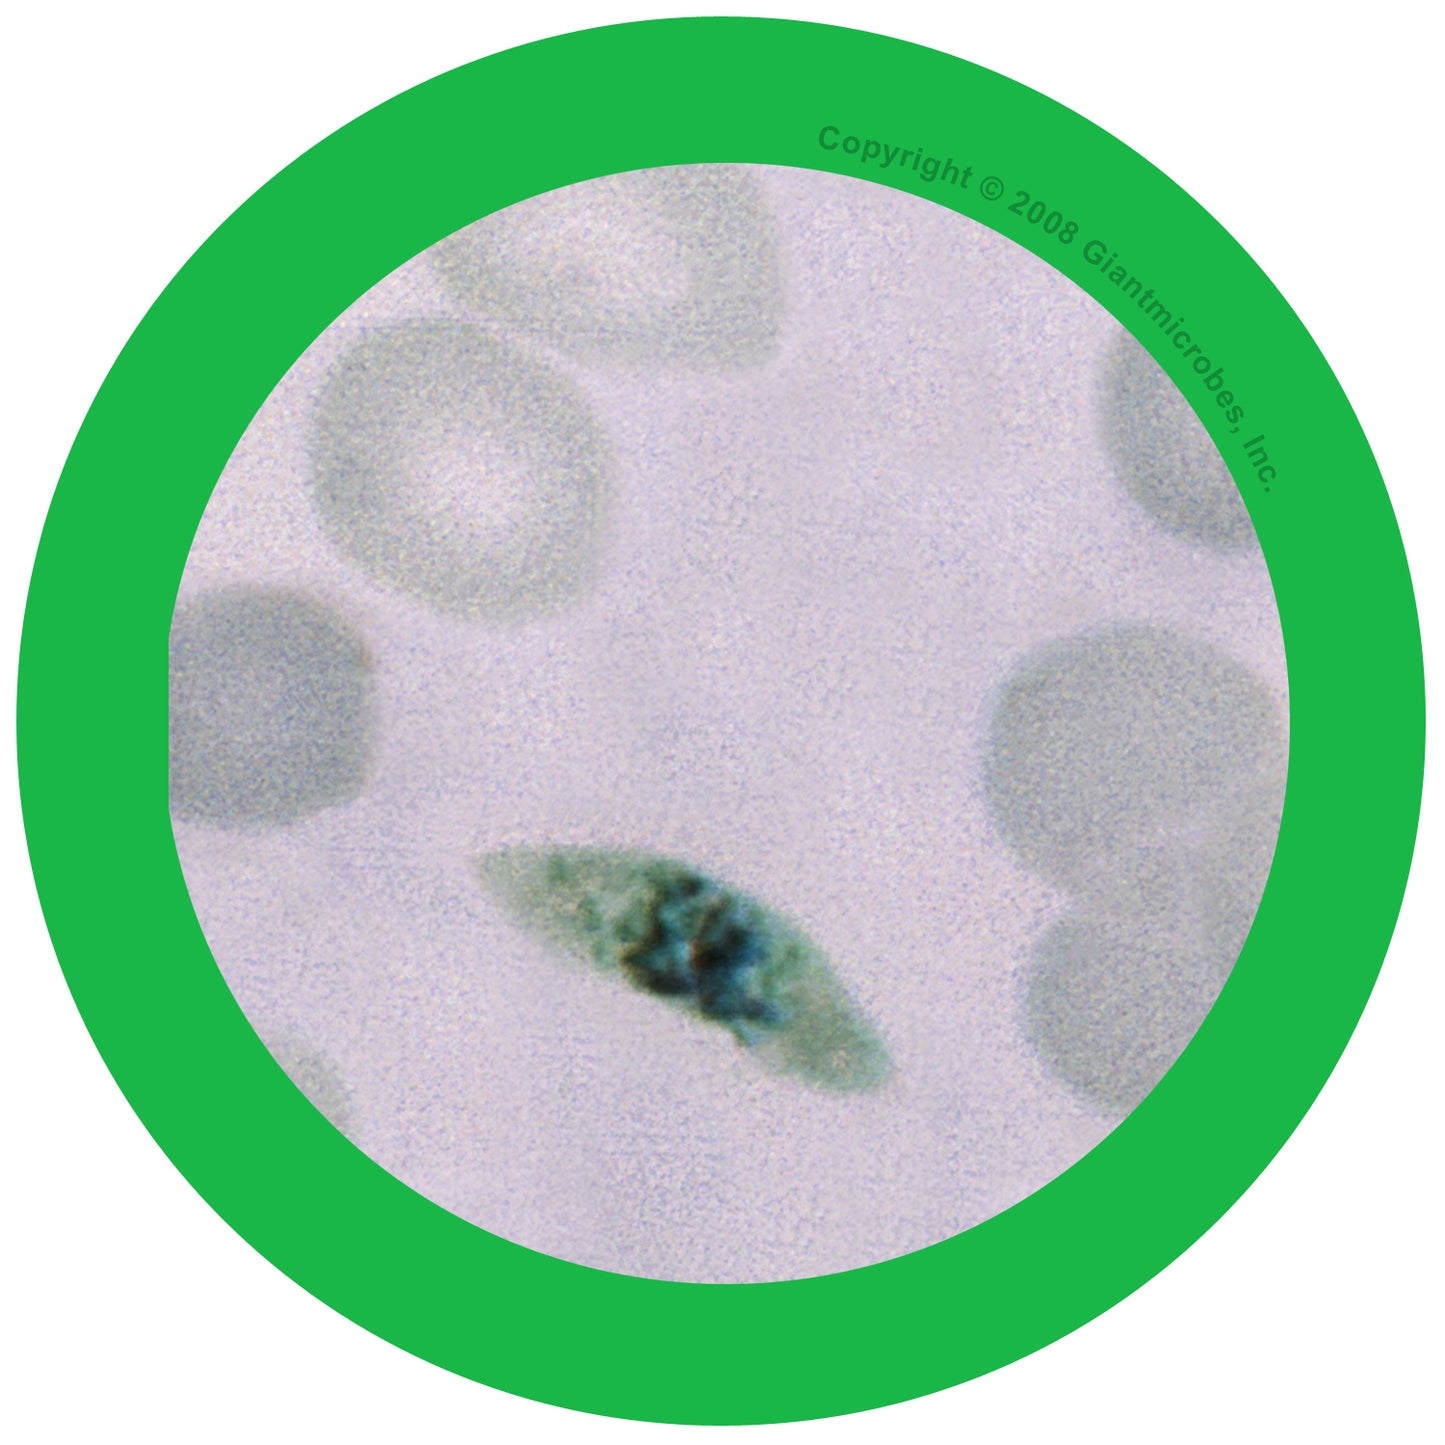 Malaria (Plasmodium Falciparum)